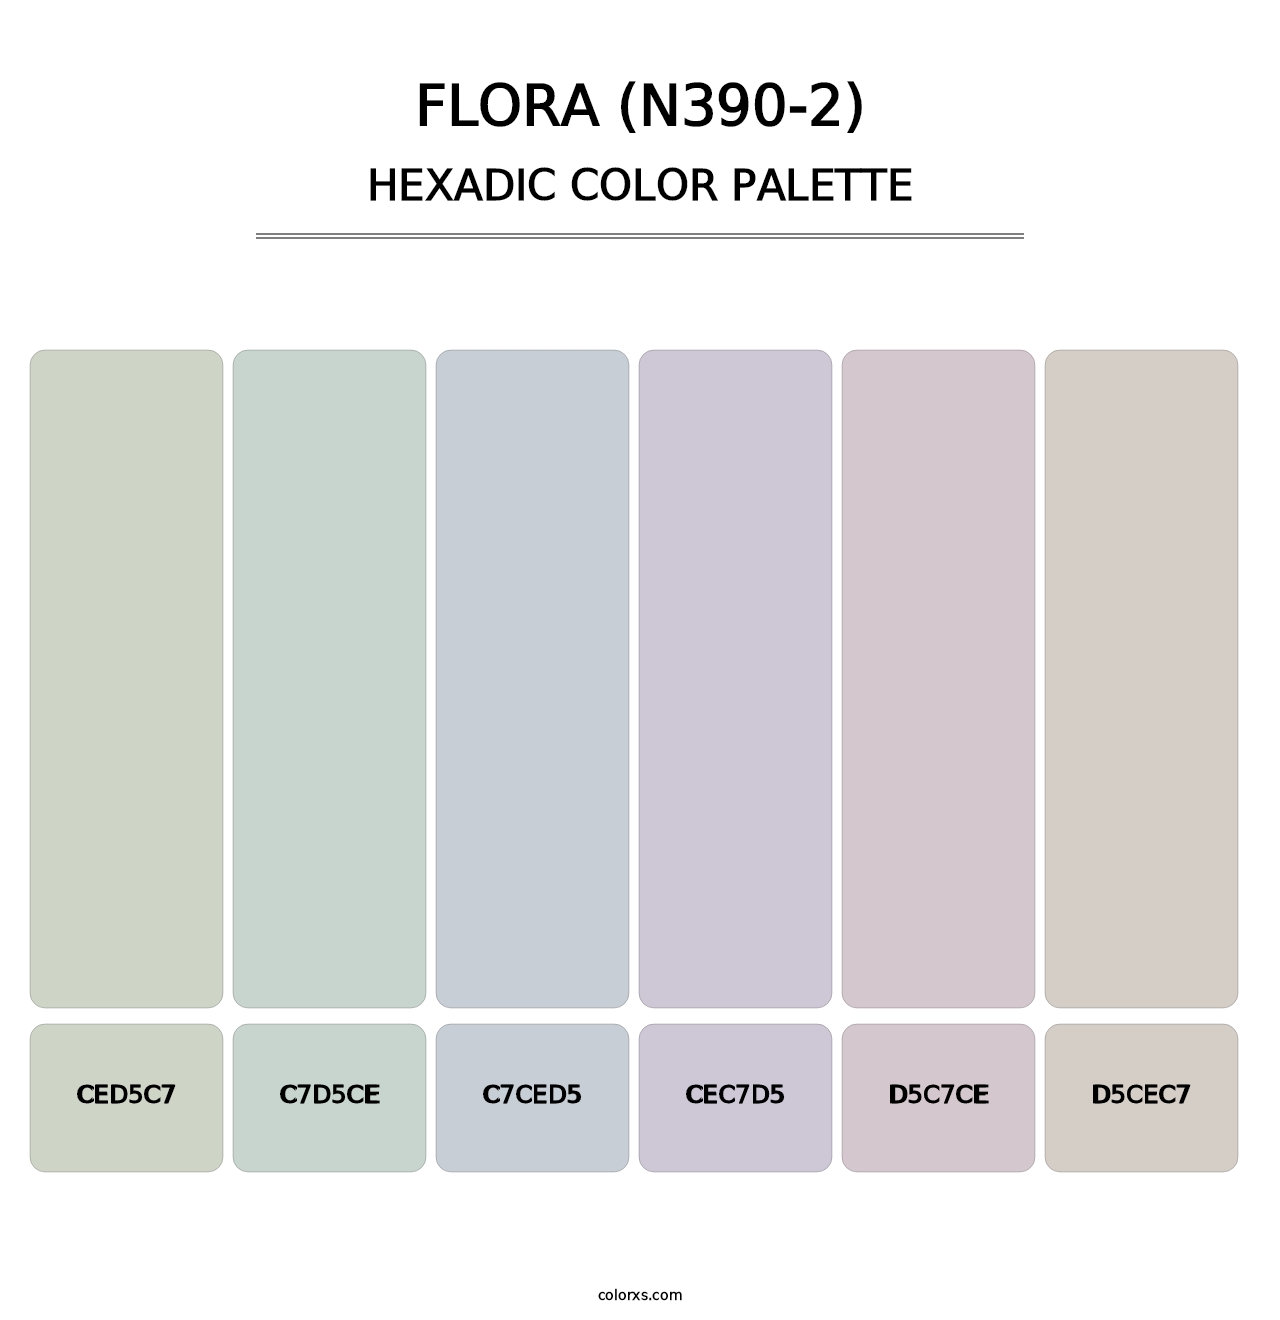 Flora (N390-2) - Hexadic Color Palette